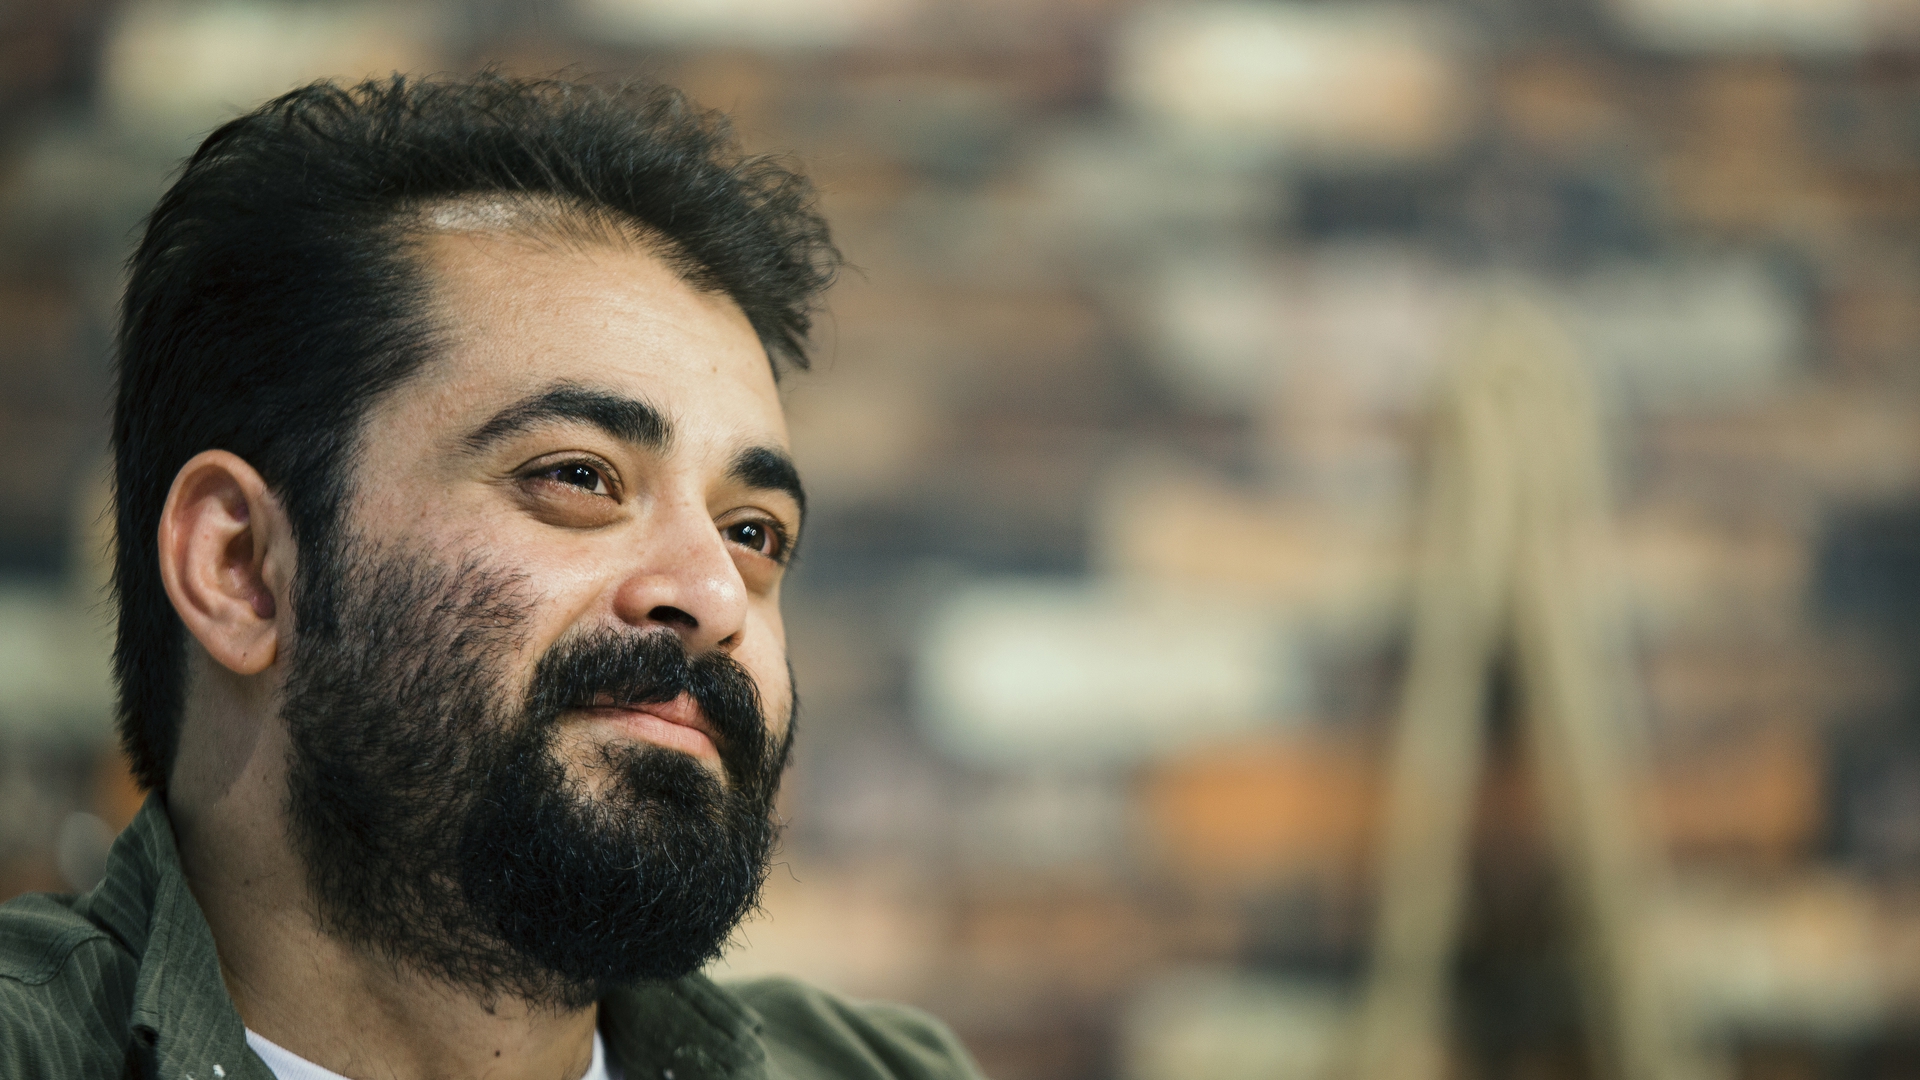 تصویری از حسین لطفی نیک، تهیه کننده و کارگردان سینما و تلویزیون در حال بازیگری سر صحنه یکی از آثارش